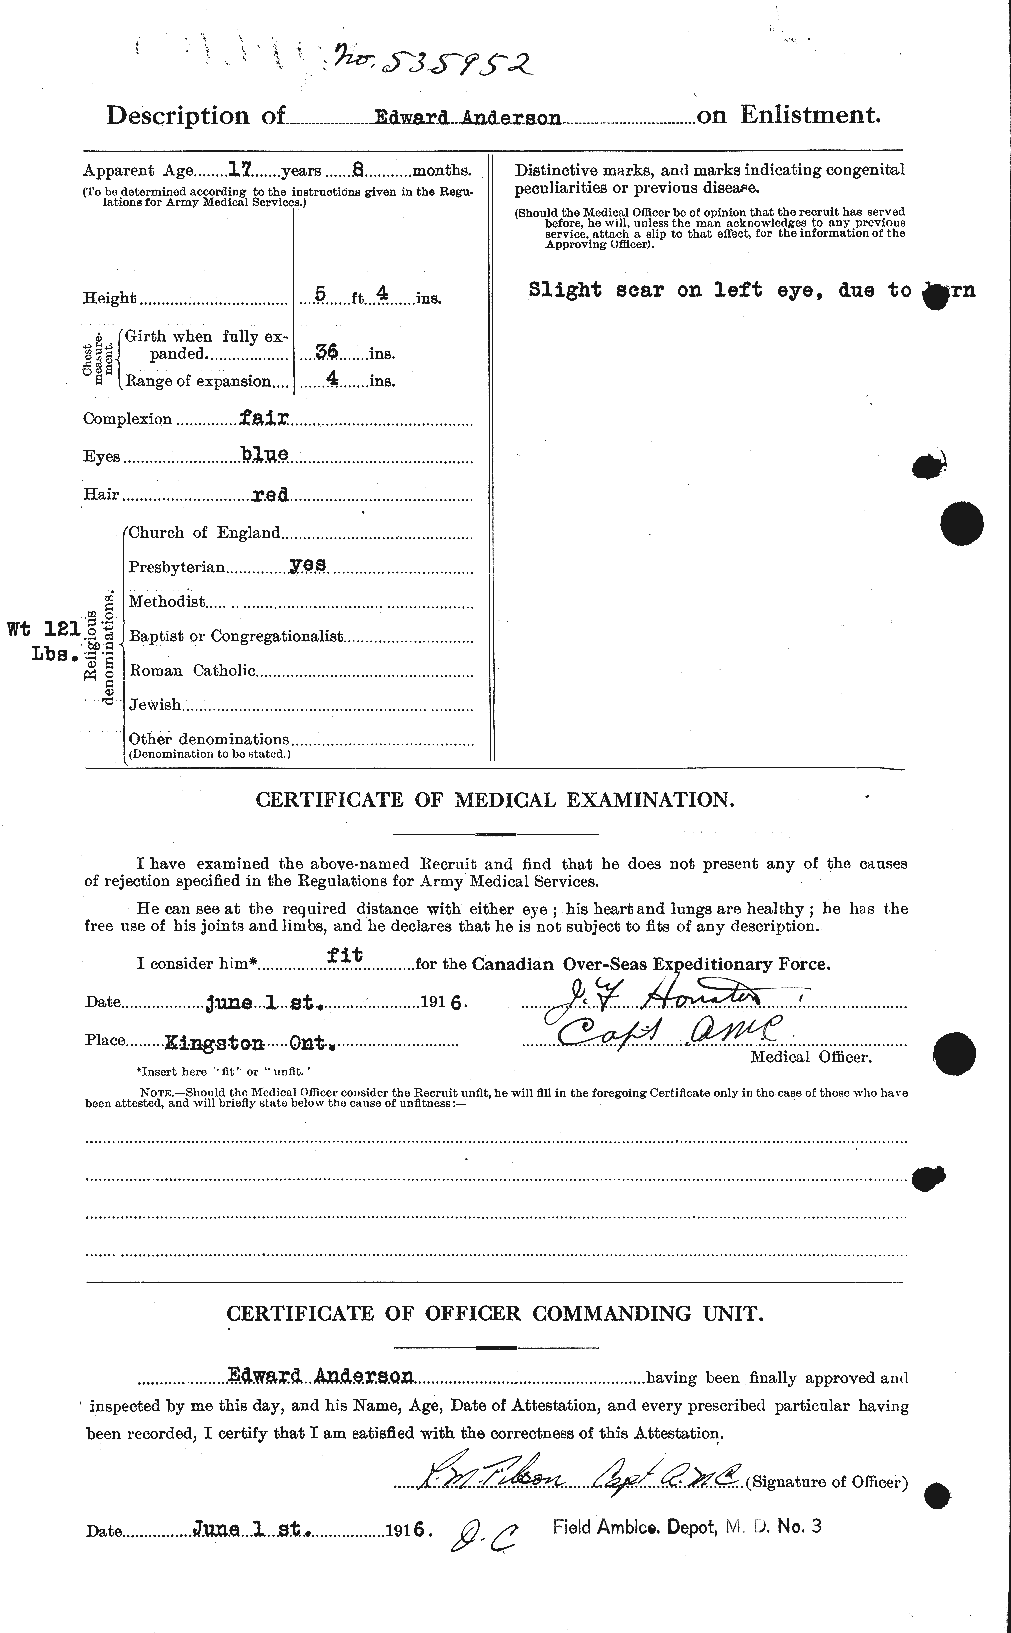 Dossiers du Personnel de la Première Guerre mondiale - CEC 209944b